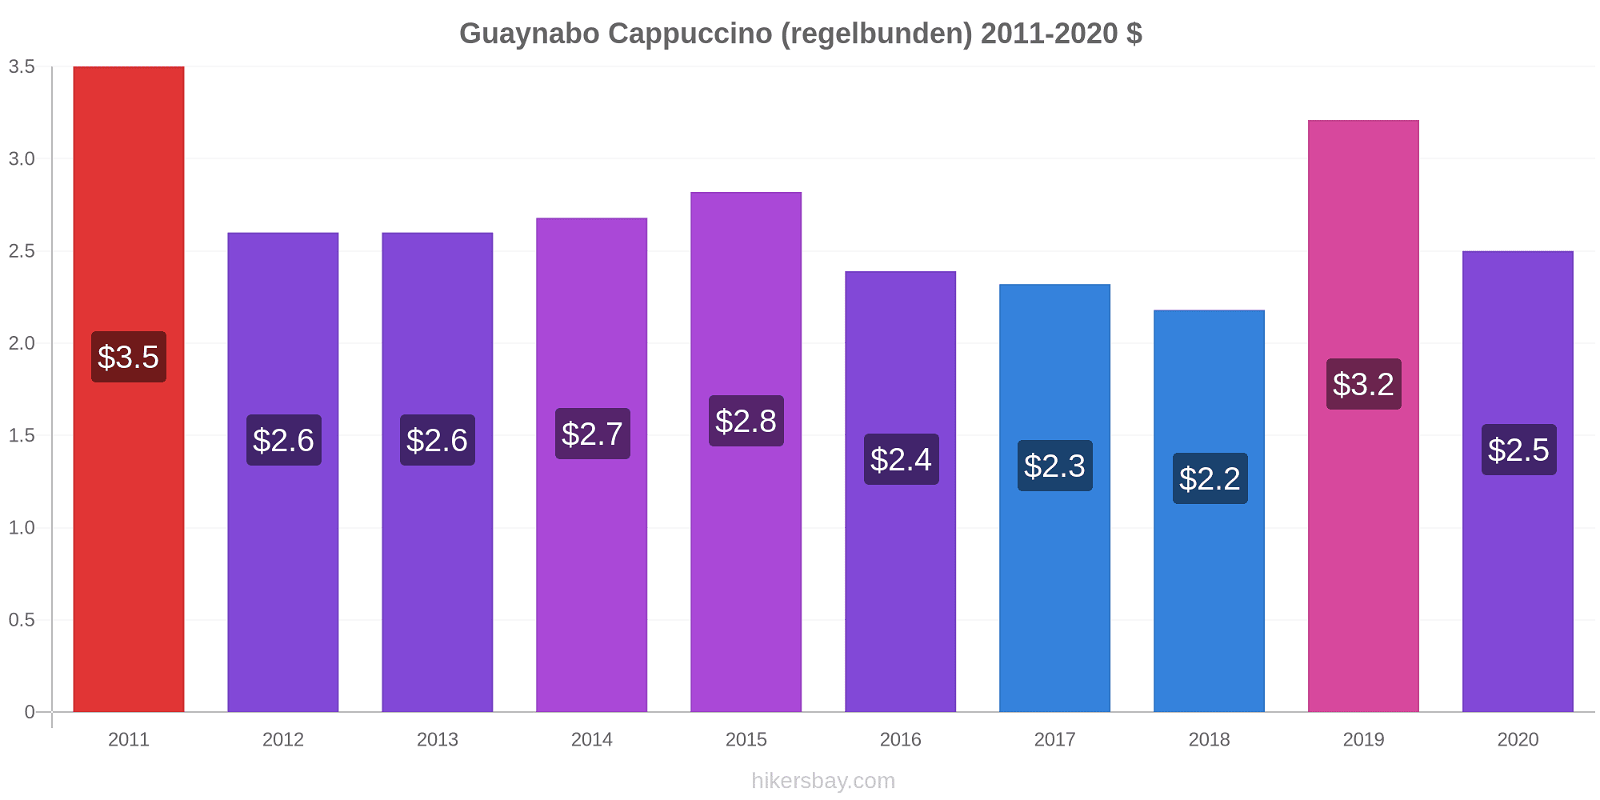 Guaynabo prisförändringar Cappuccino (regelbunden) hikersbay.com